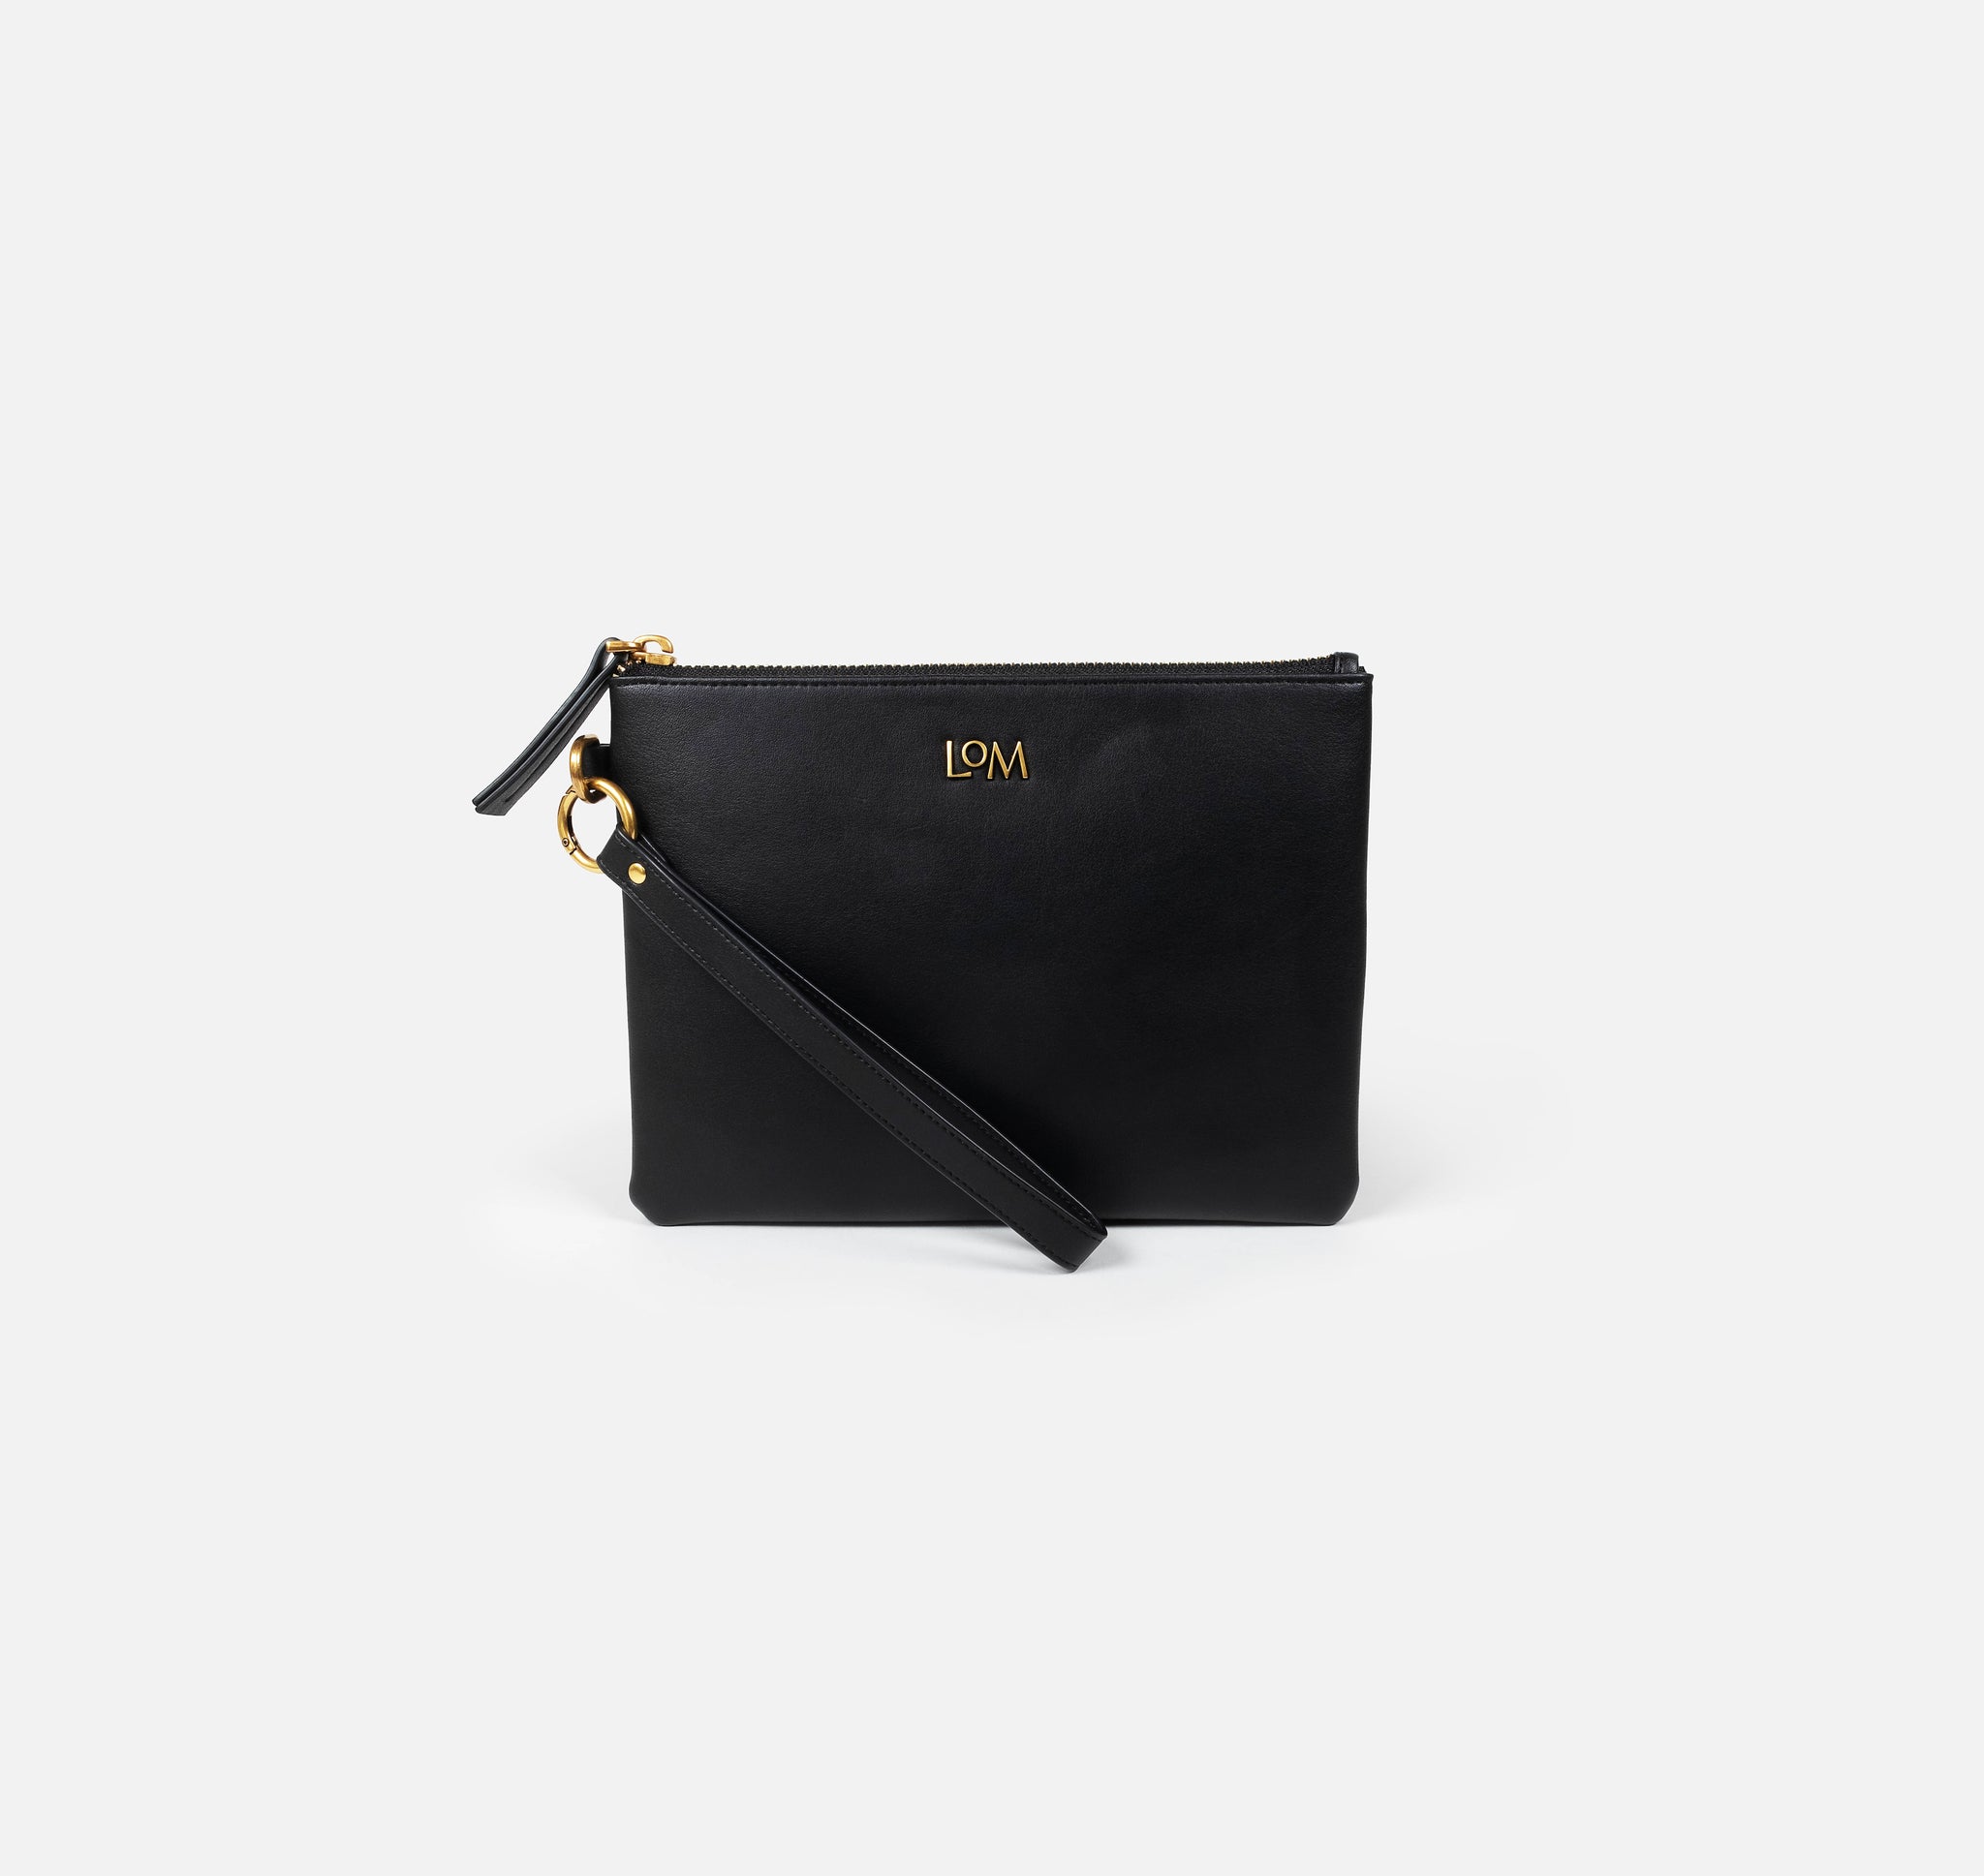 Sans Beast - Luxe Vegan Handbags + Wallets